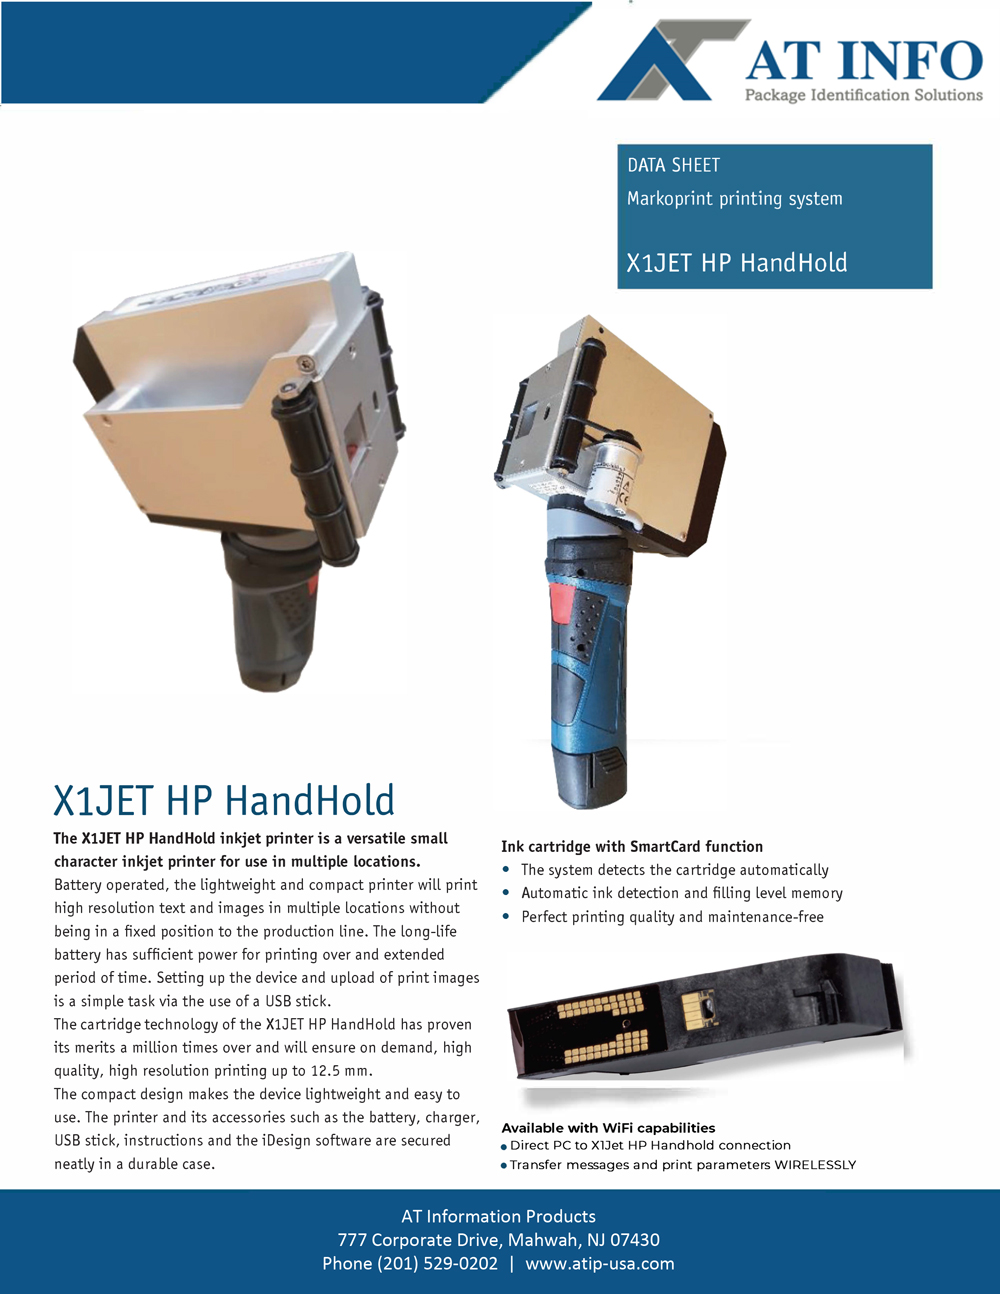 X1Jet Pro Handhold brochure